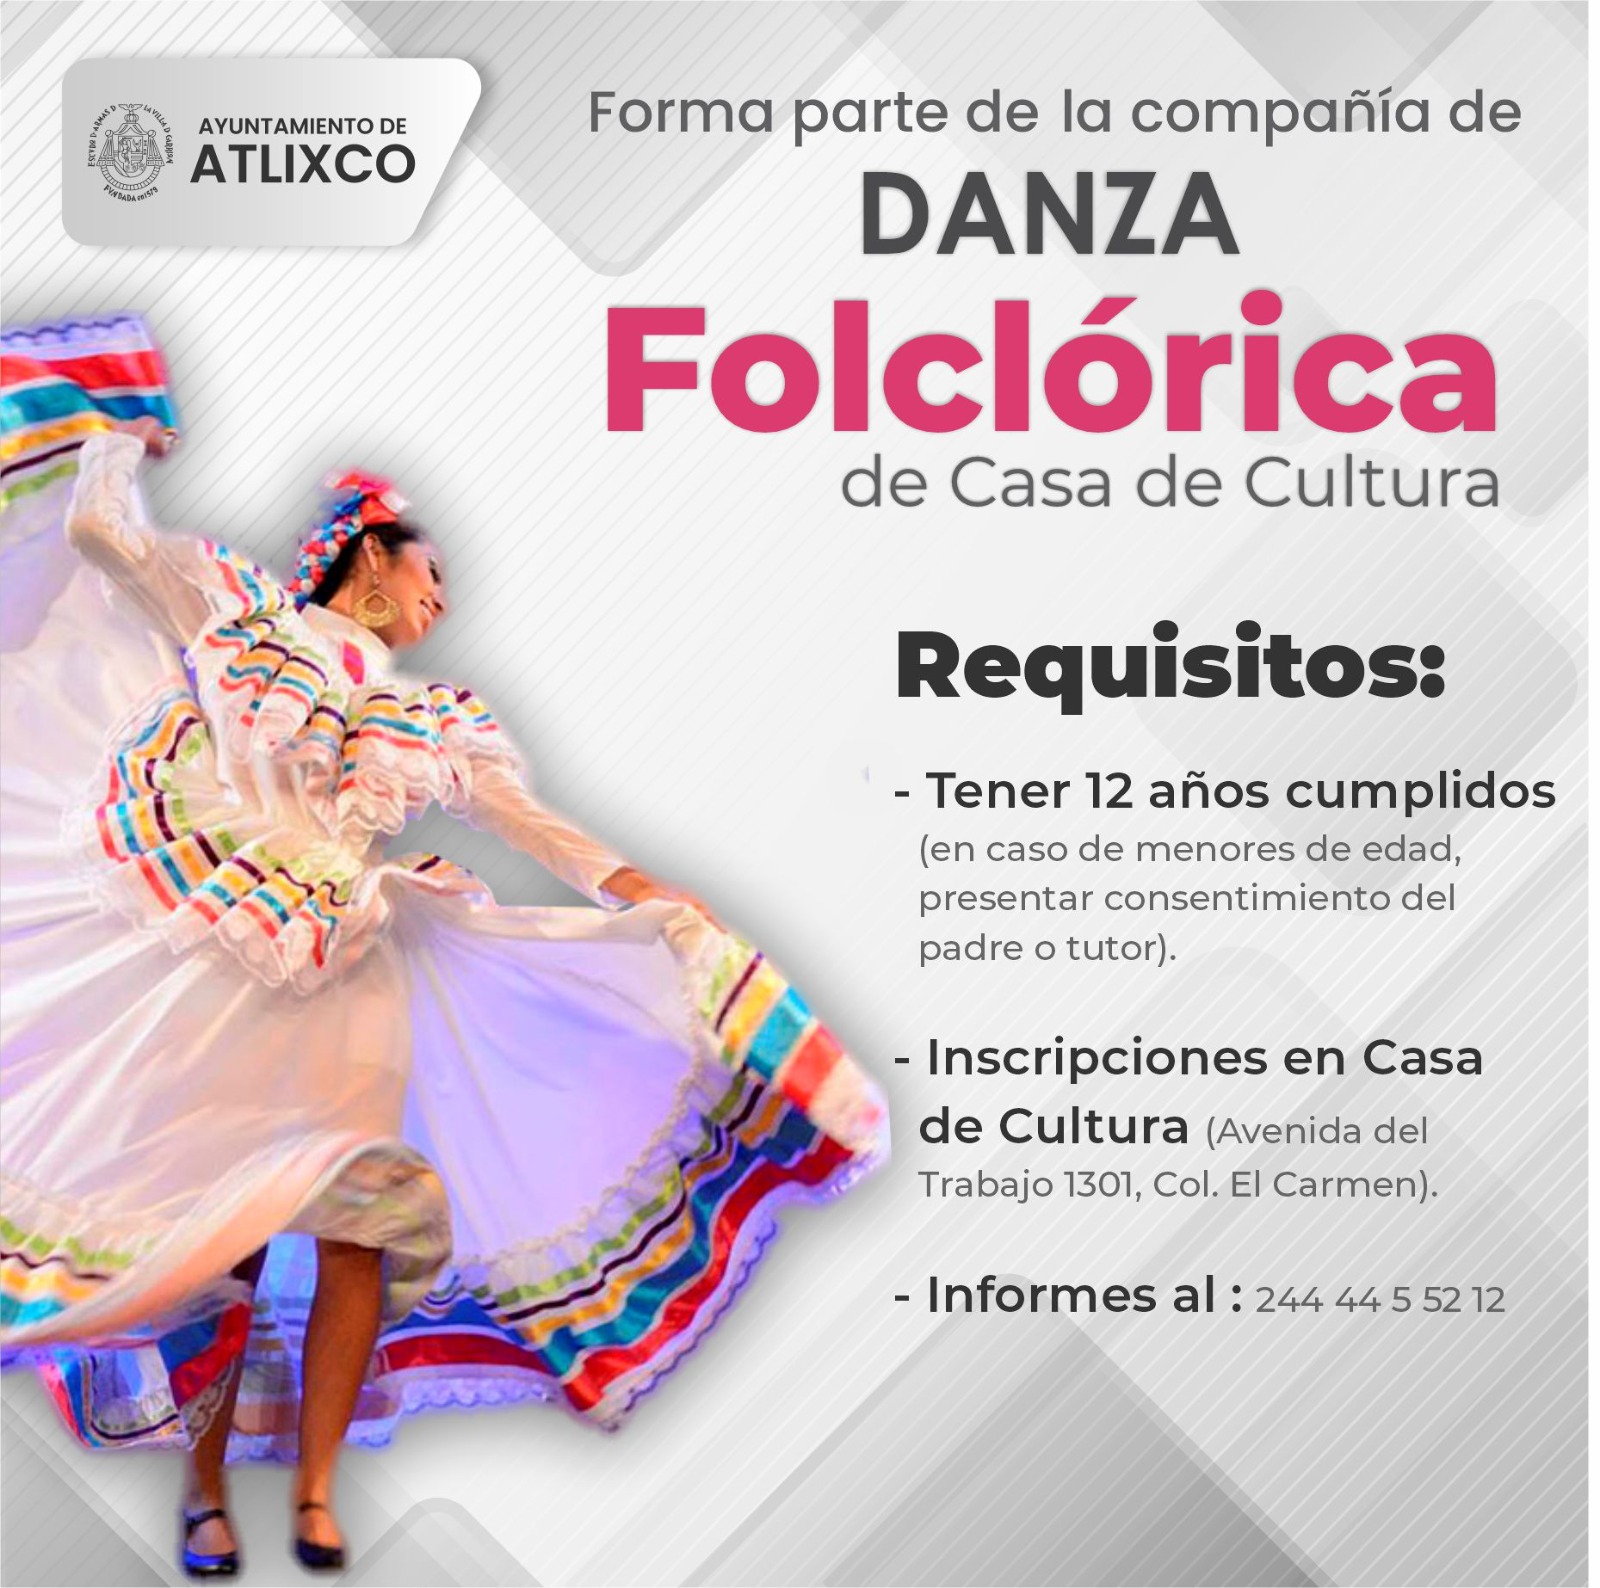 Invitan a formar parte de la compañía de danza folclórica Acapetlahuacan de Atlixco